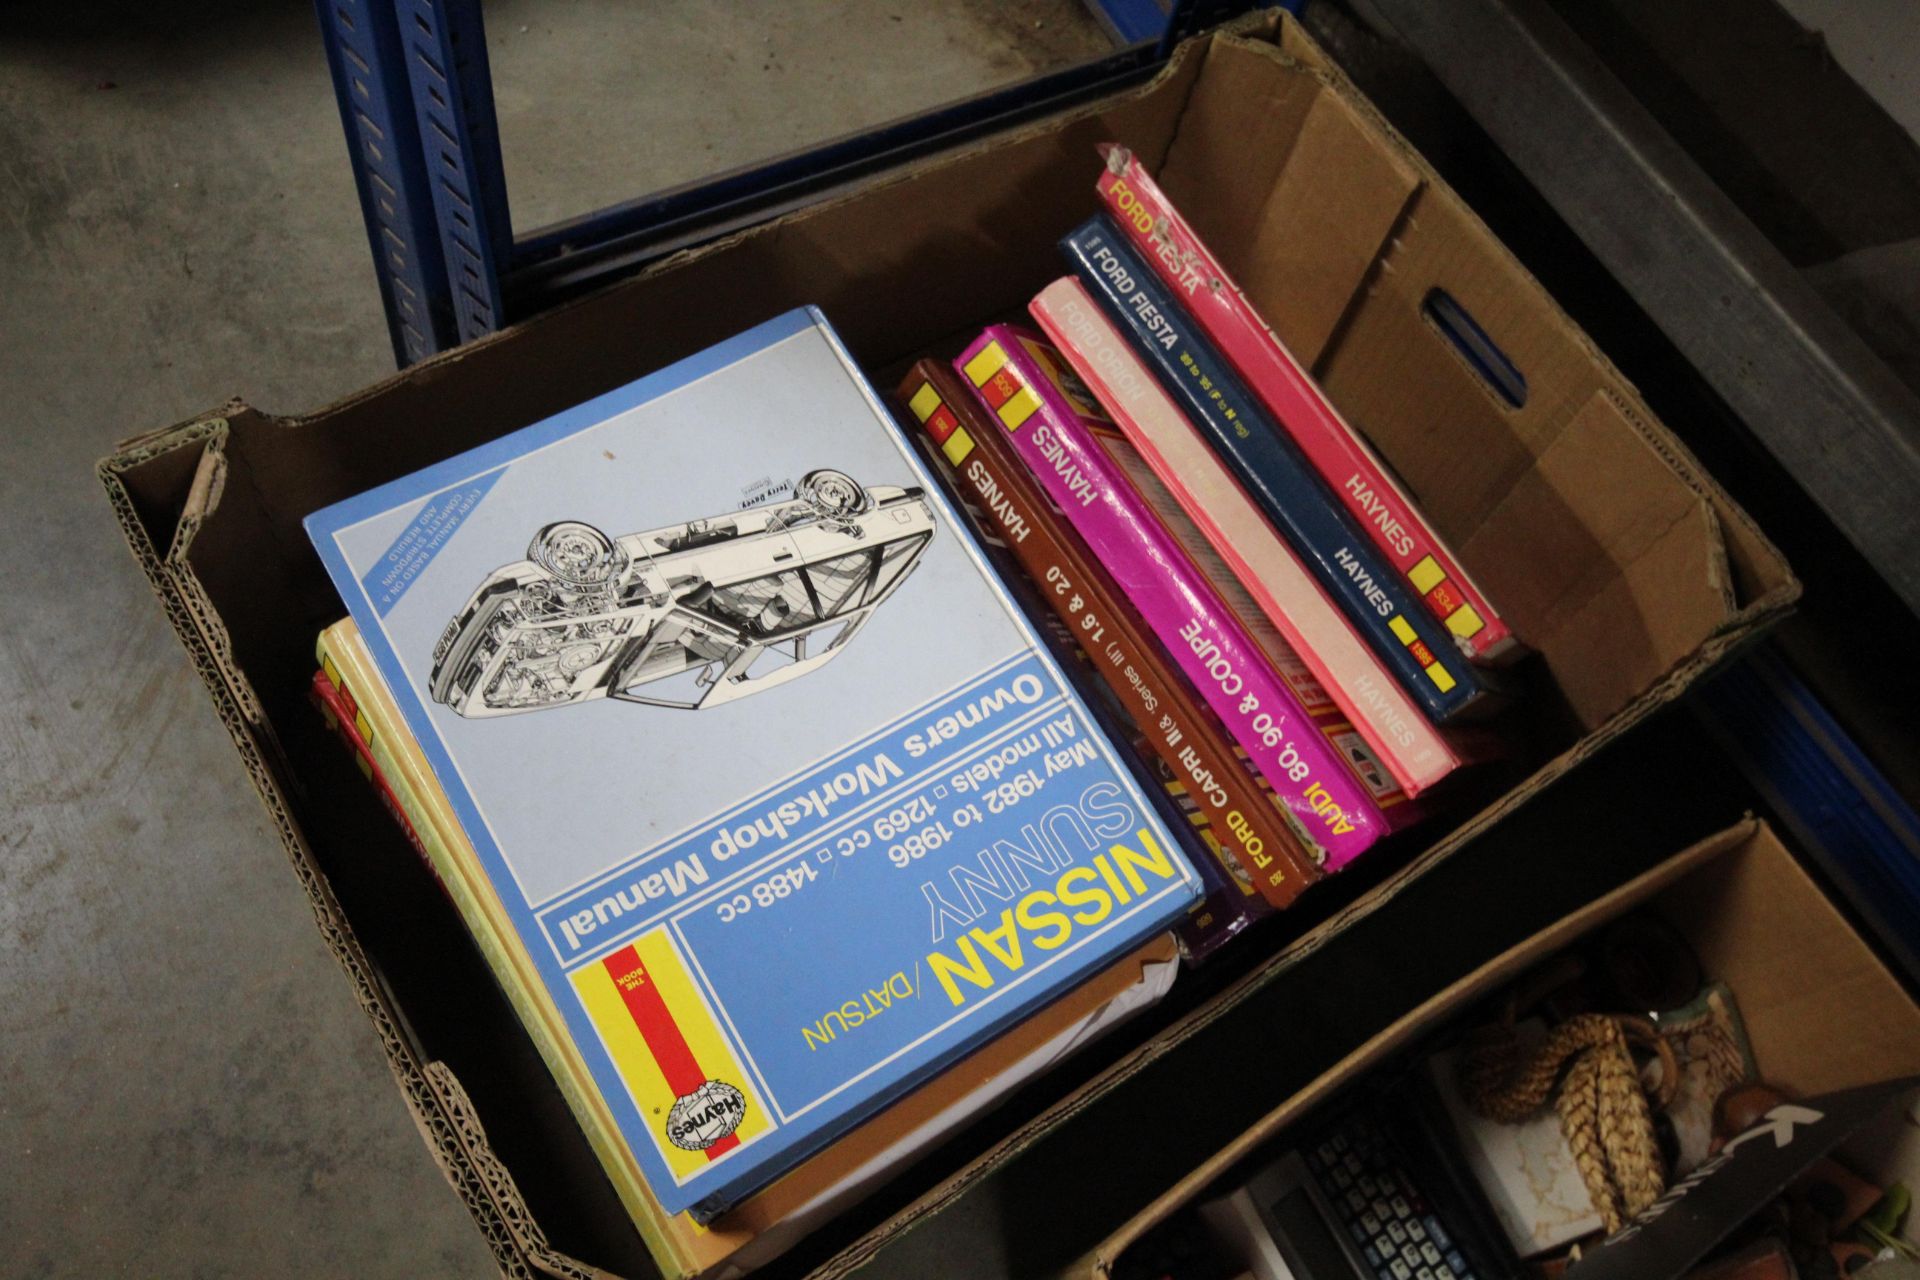 A box of Haynes manuals